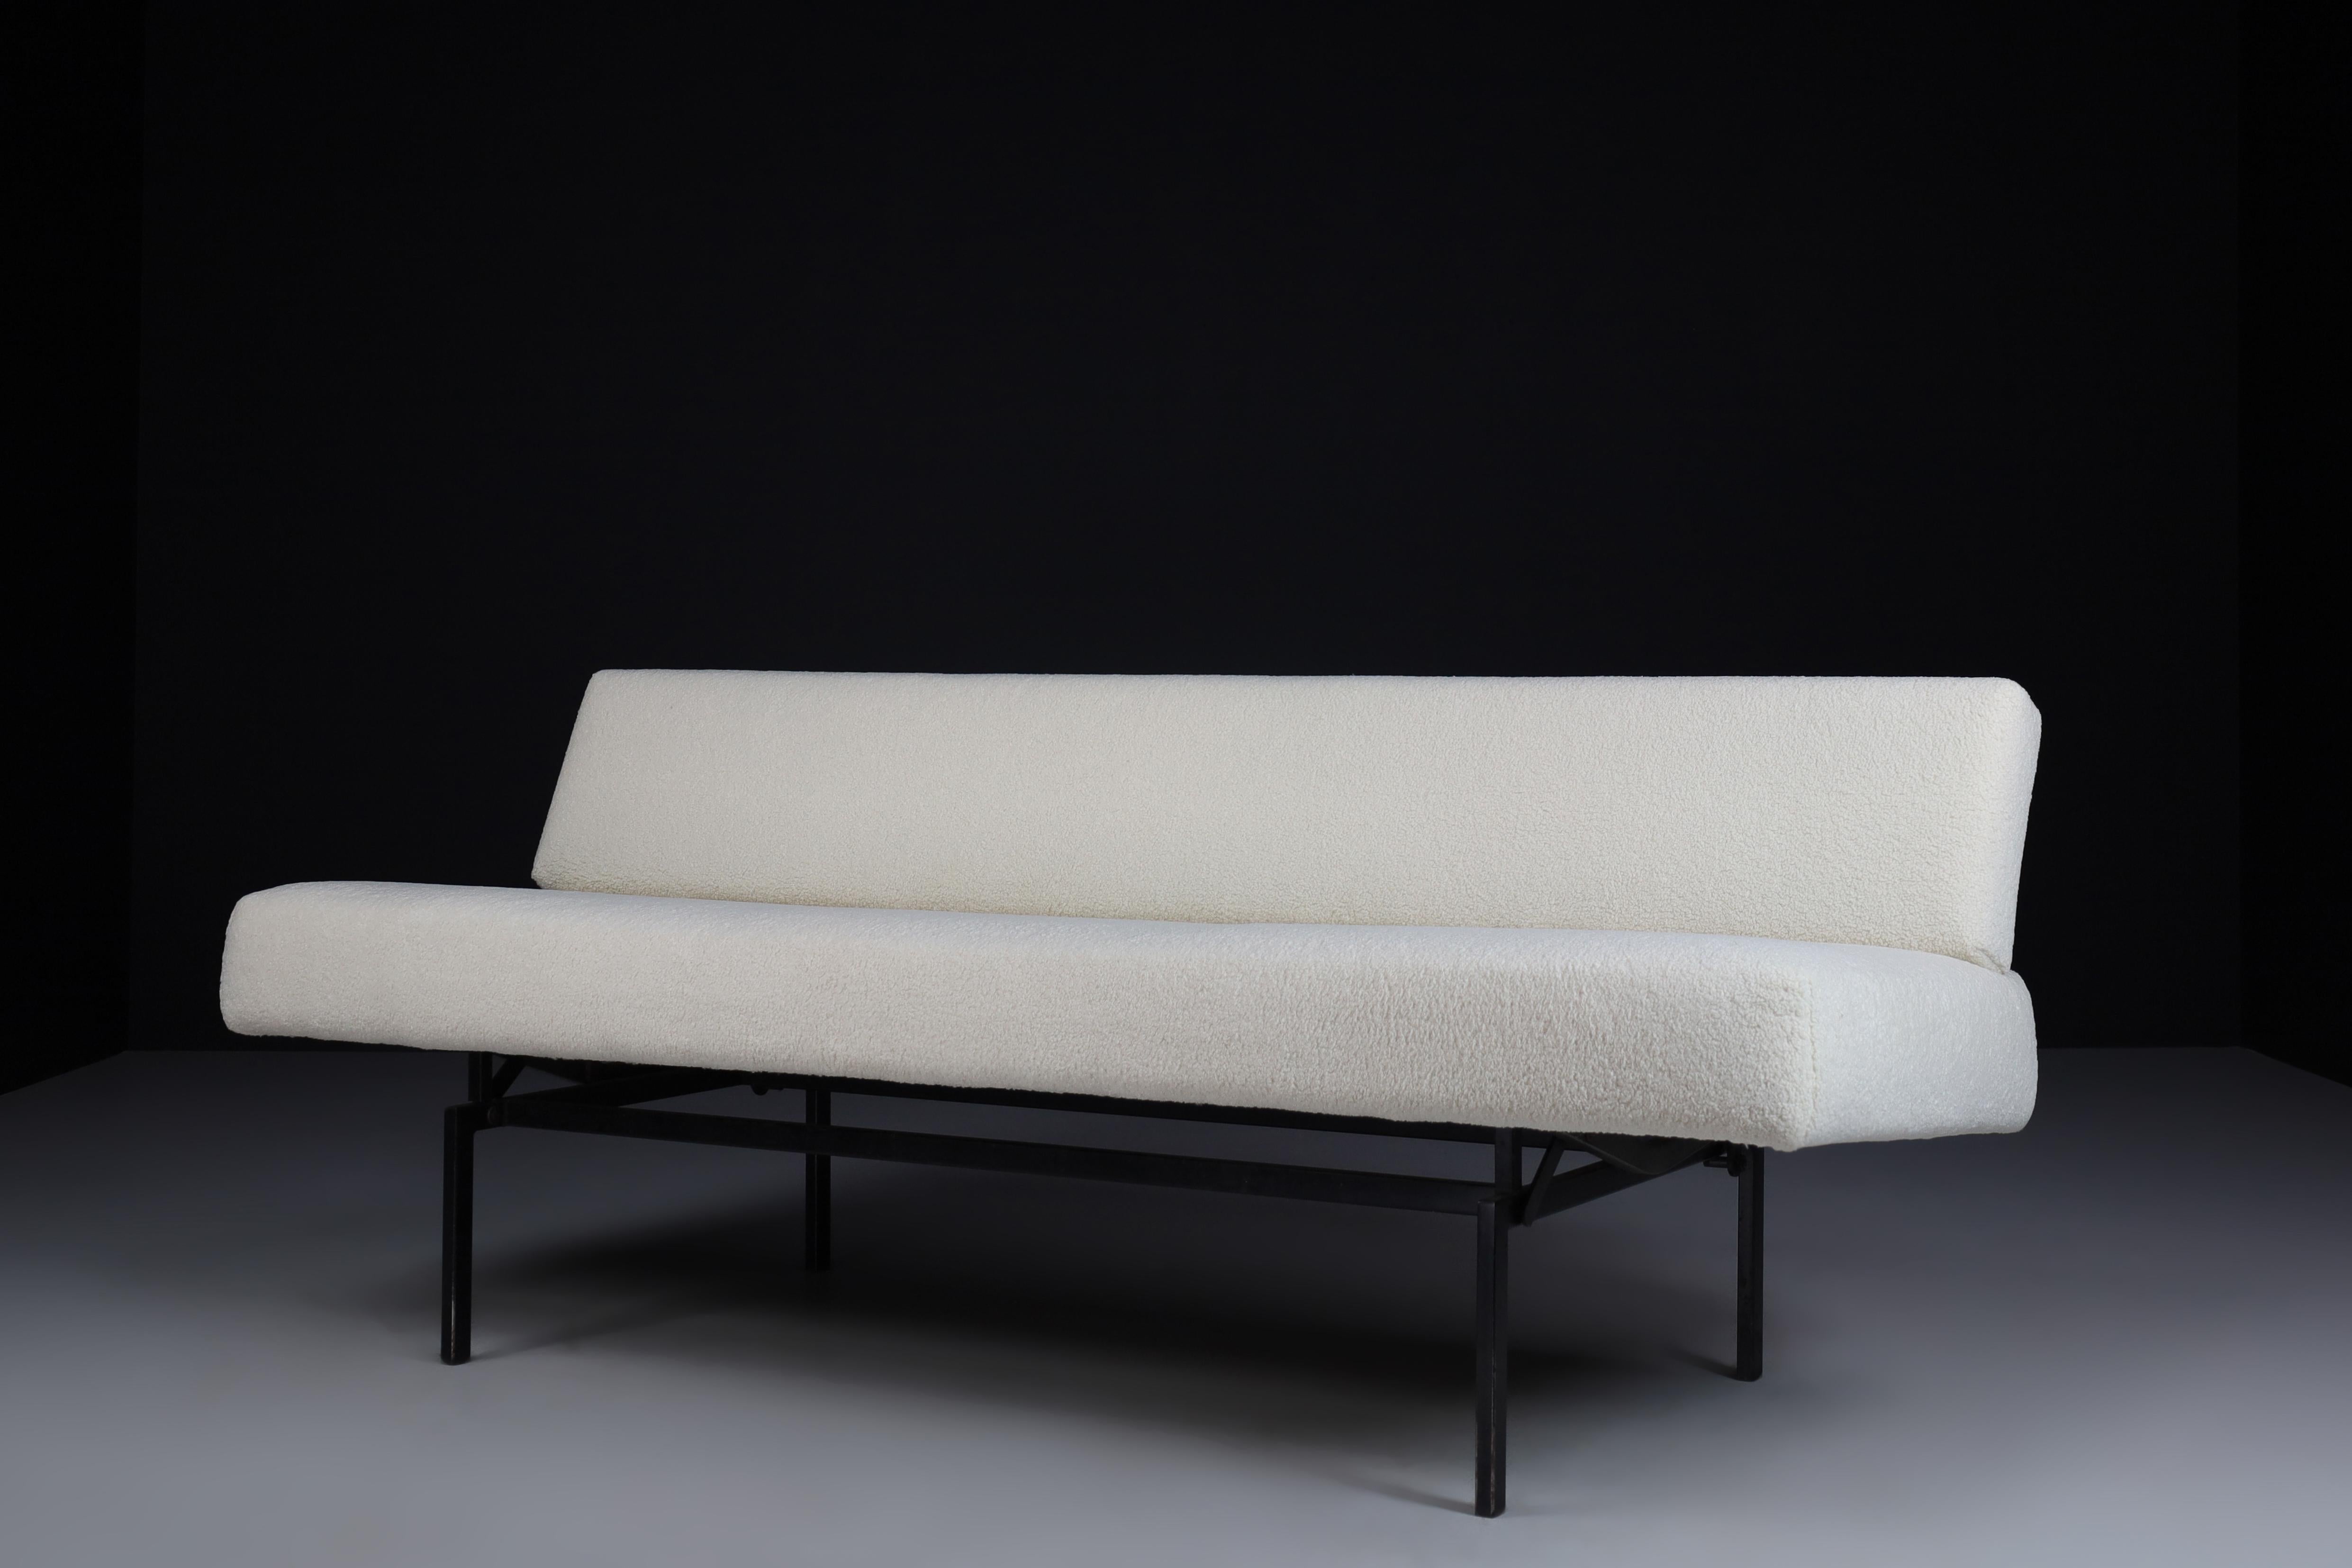 Canapé minimaliste conçu par Martin Visser pour AT&T et fraîchement retapissé avec un nouveau tissu teddy. Structure en métal.
2 positions, peut être converti au lit. Ce canapé minimaliste serait un ajout accrocheur à n'importe quel intérieur tel